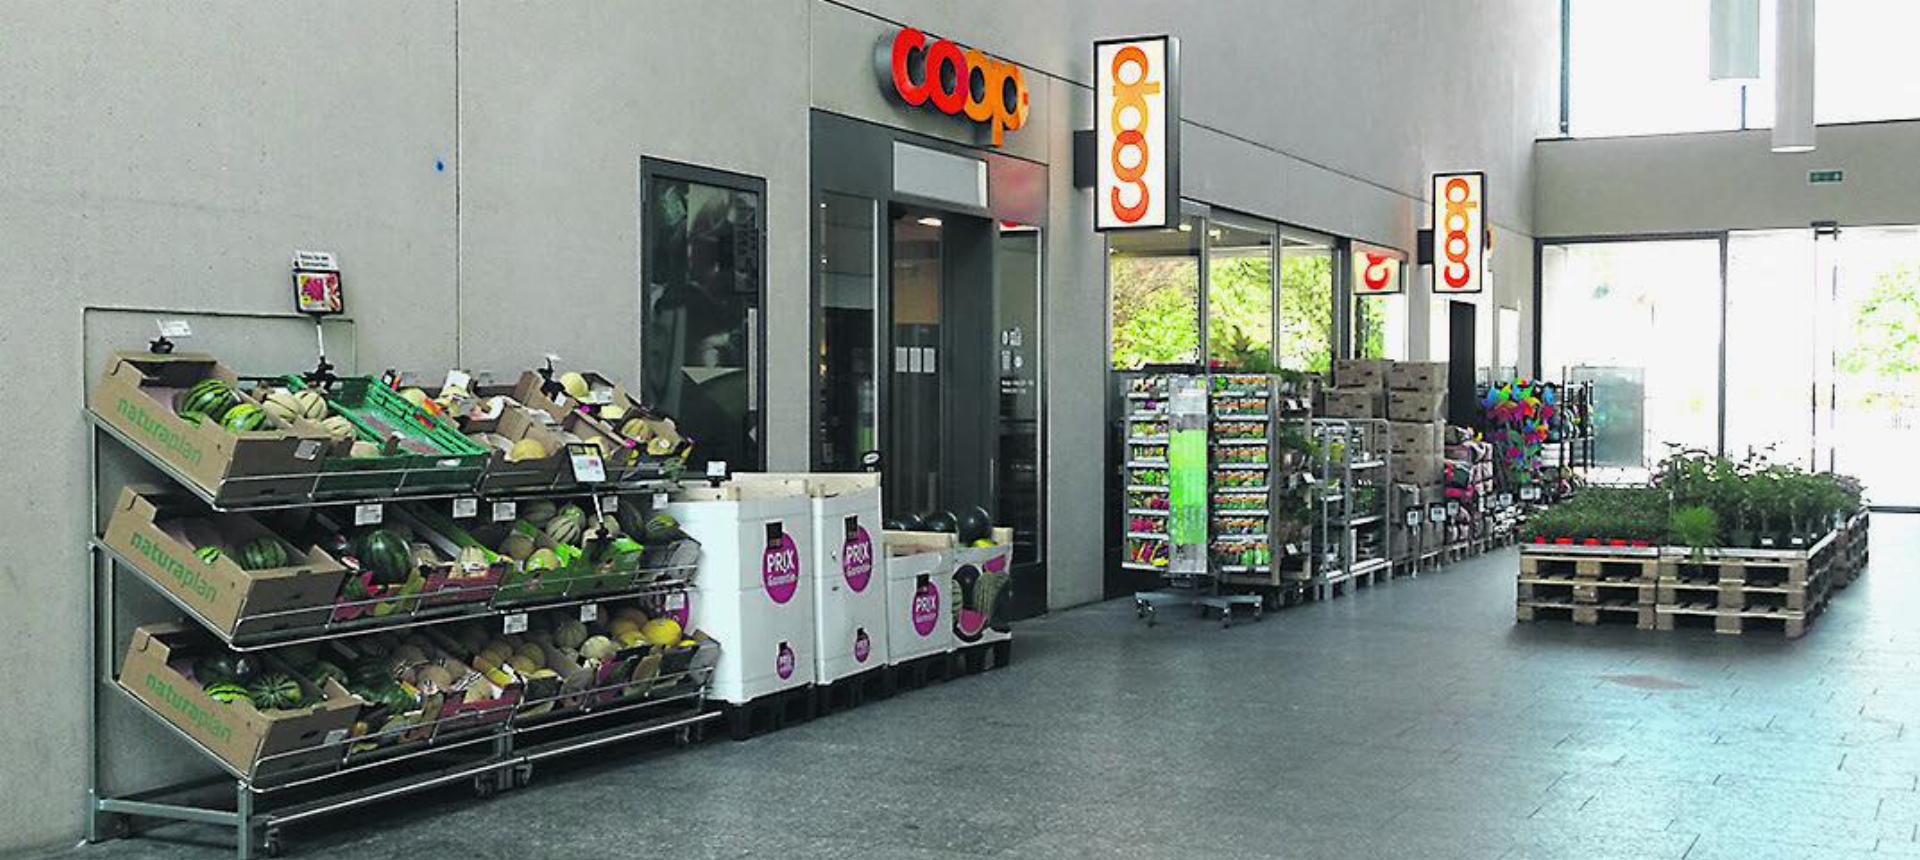 Der Coop-Supermarkt im Laufenburger XL-Gebäude wird in absehbarer Zeit im Zuge der Umbauarbeiten für zwei Monate geschlossen. Foto: Susanne Hörth